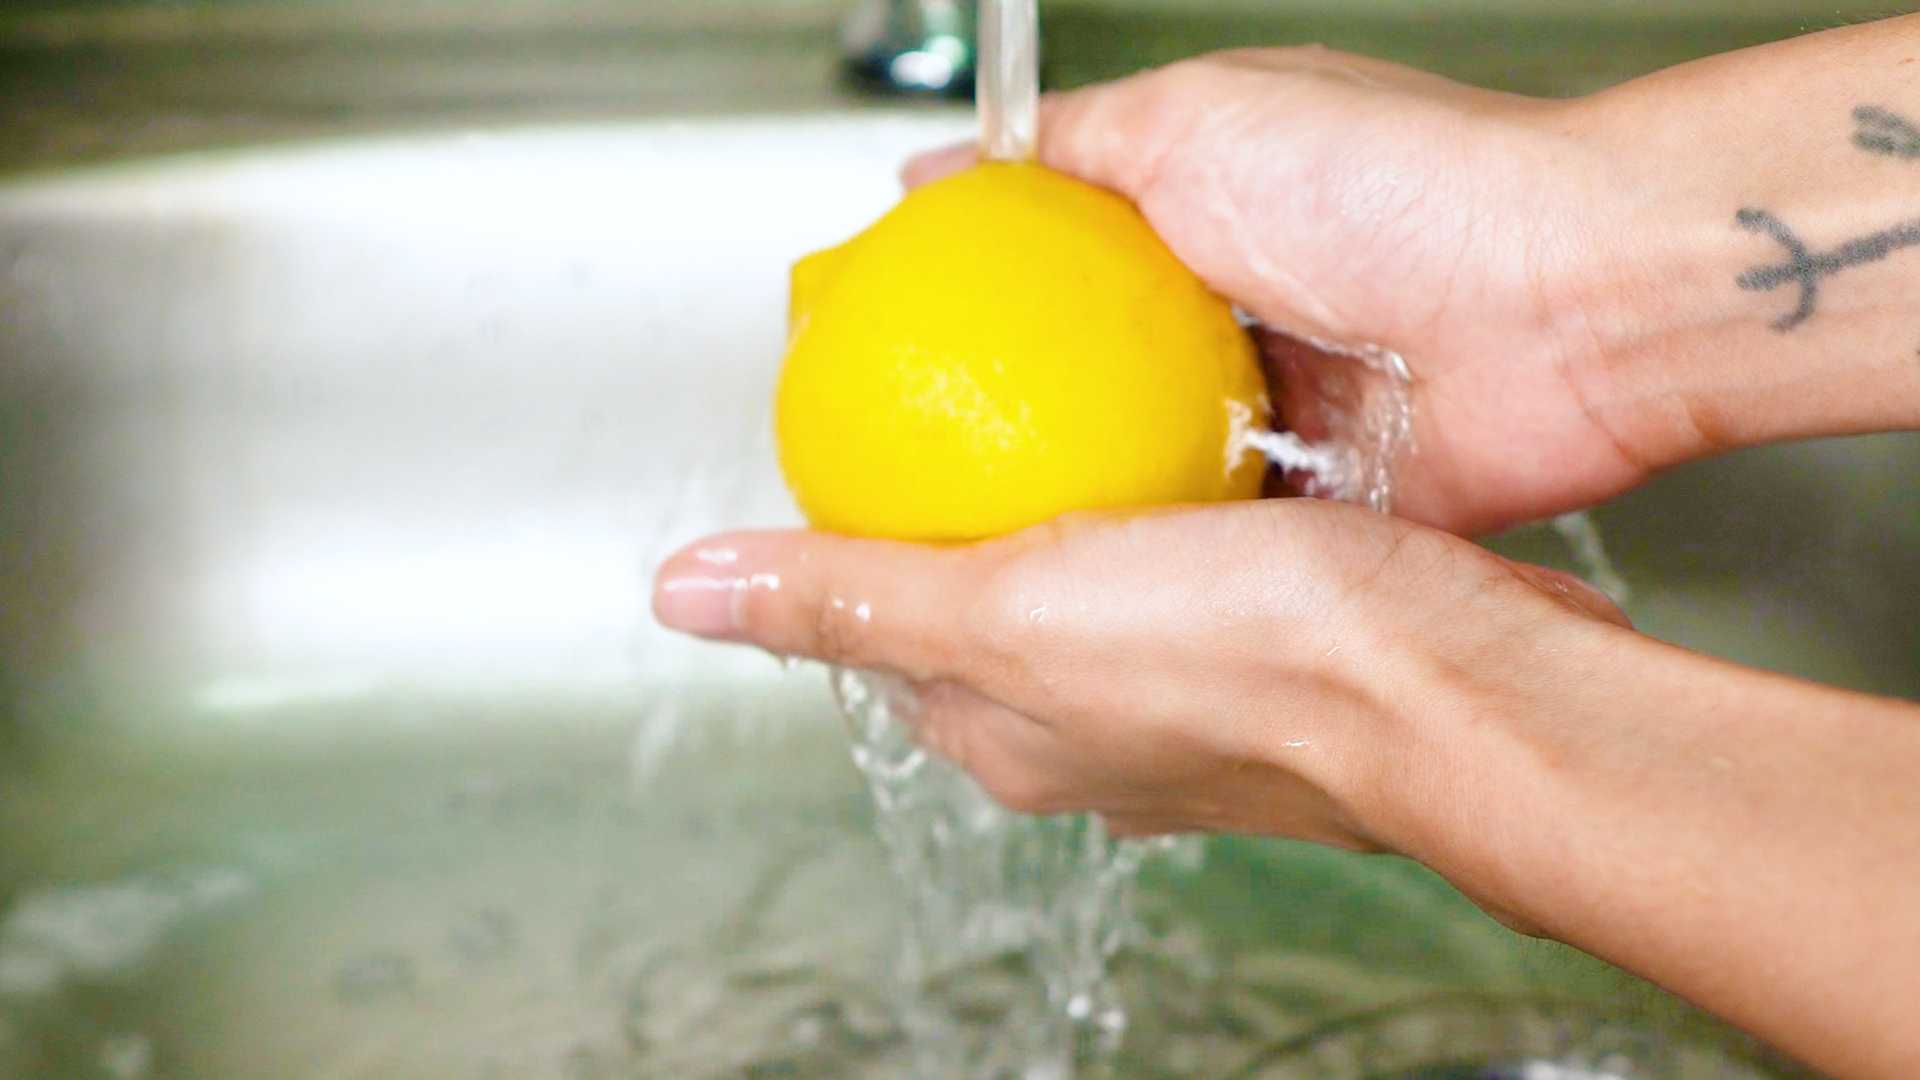 Можно ли заменить лимон лимонной кислотой при приготовлении рыбы, кремов, варенья, теста